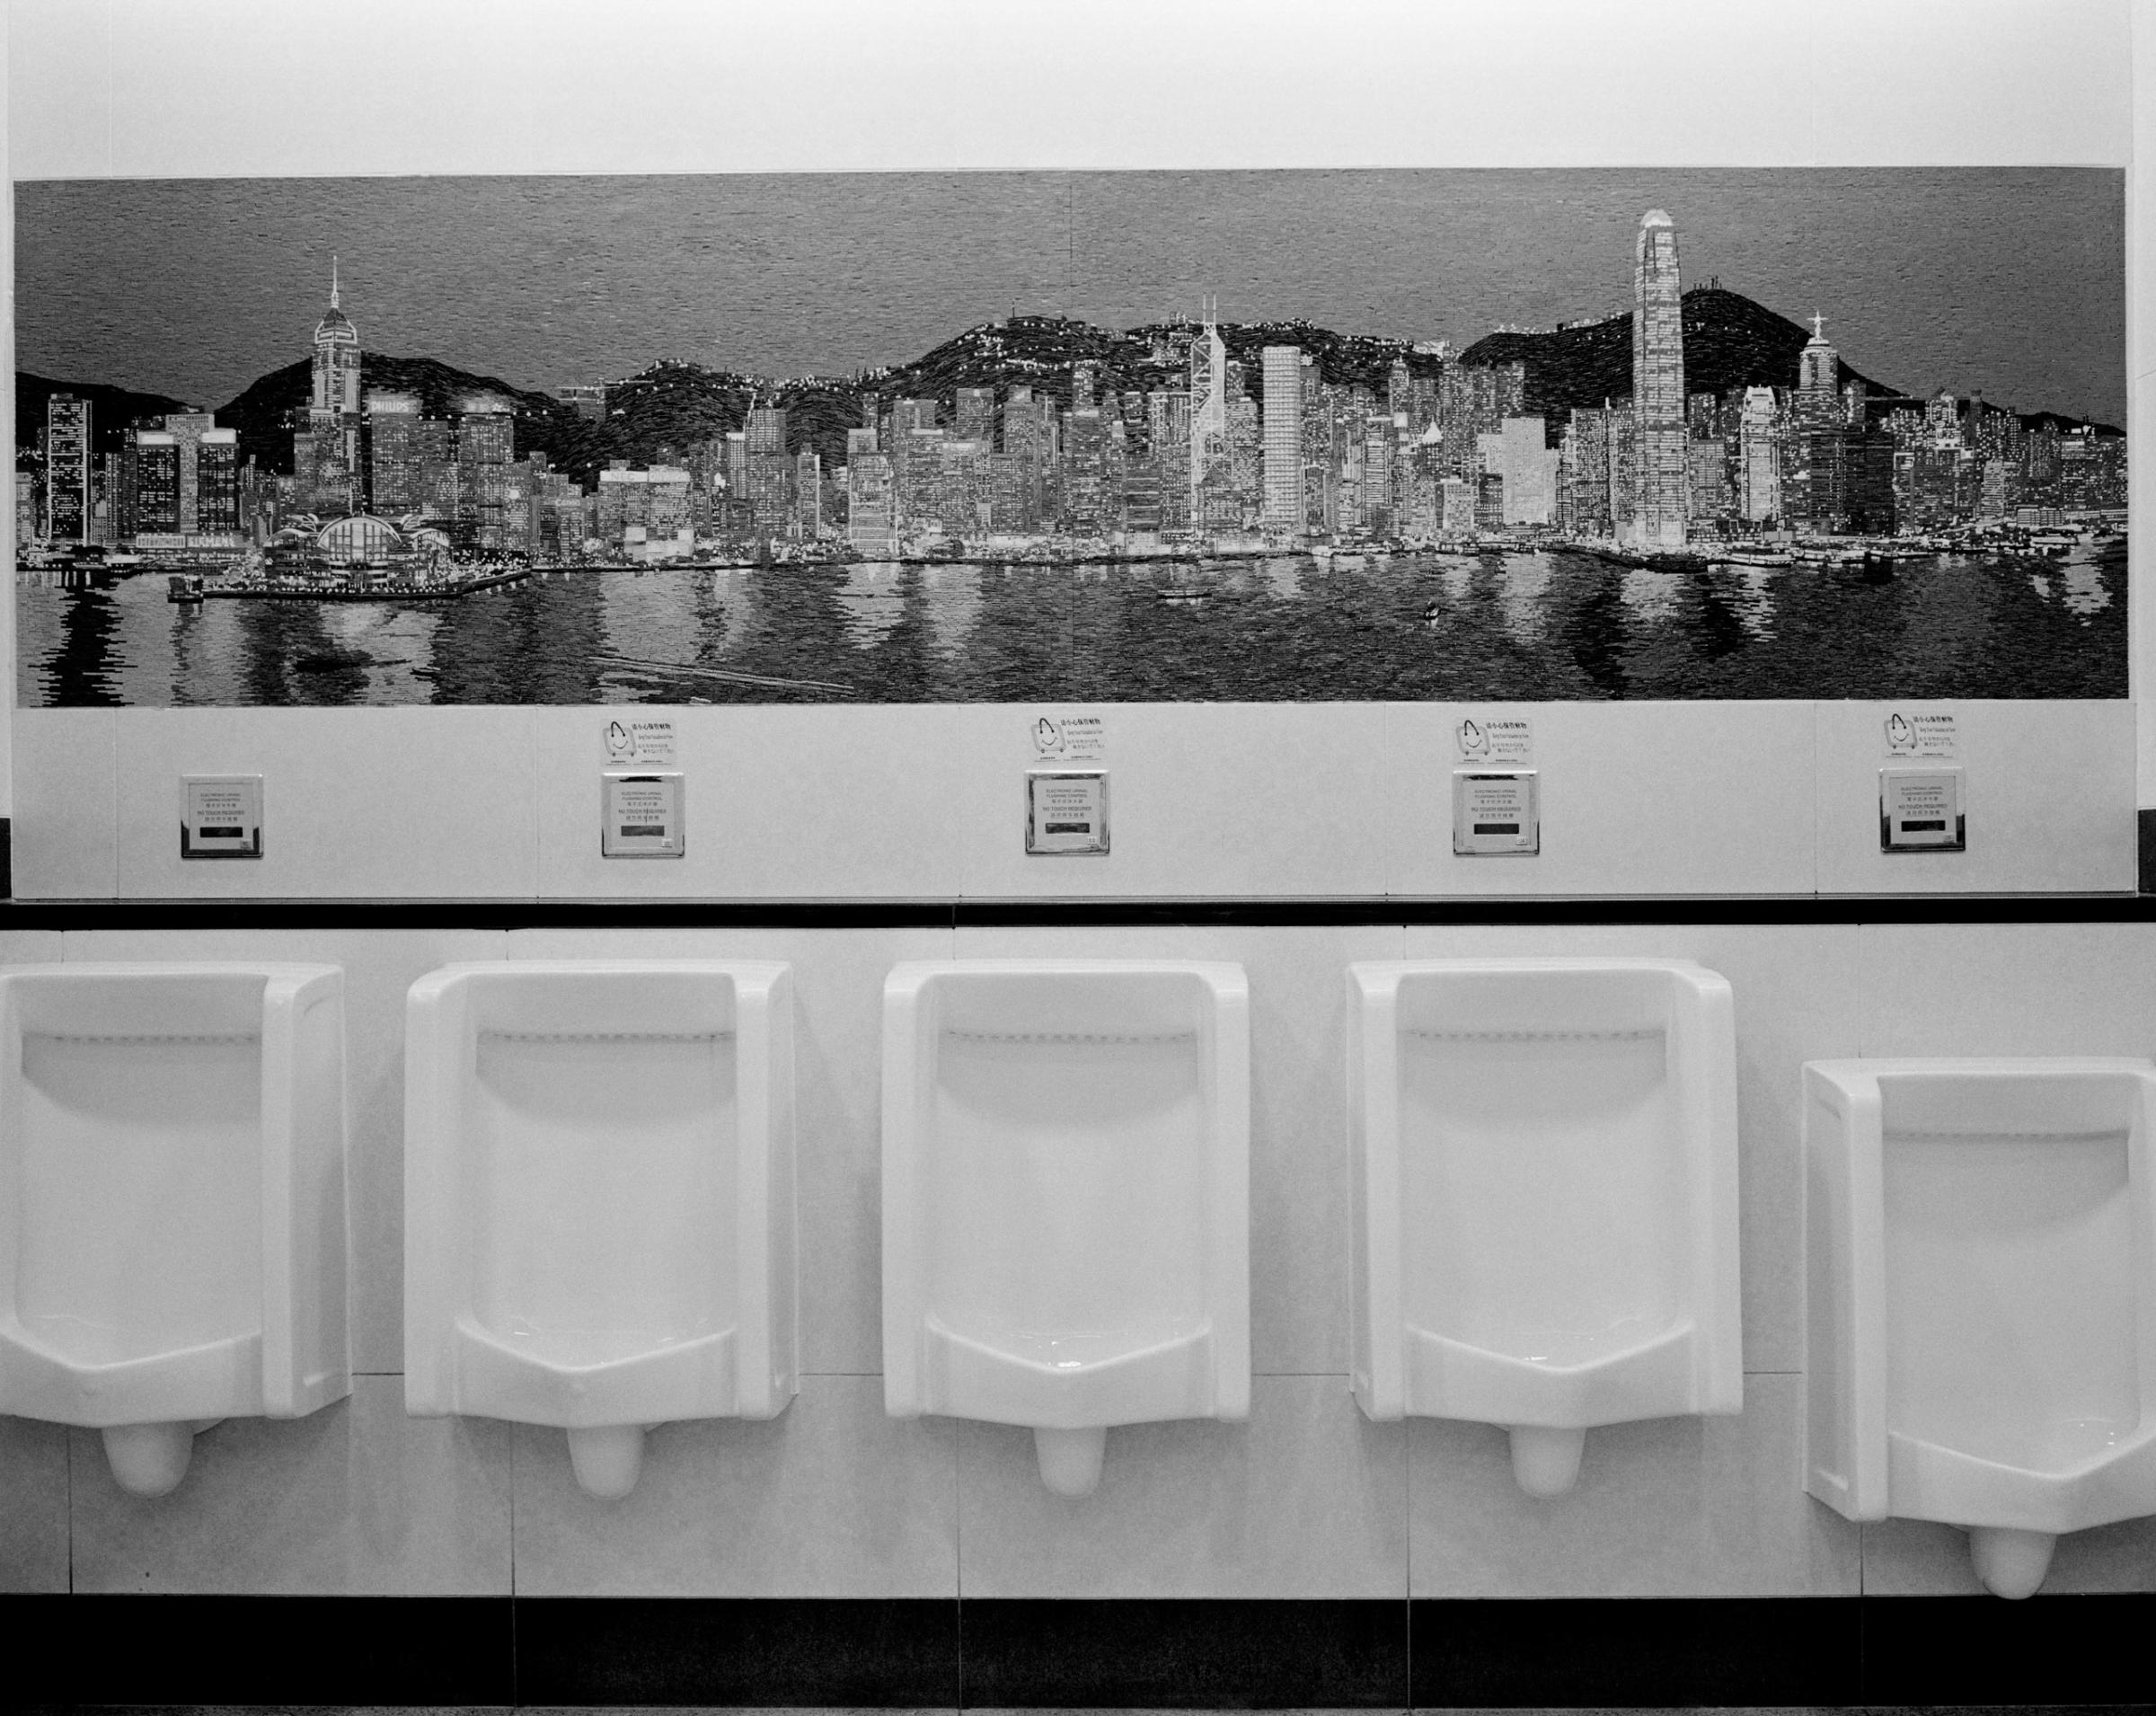 CHINA. Hong Kong. 2008. Airport restroom.